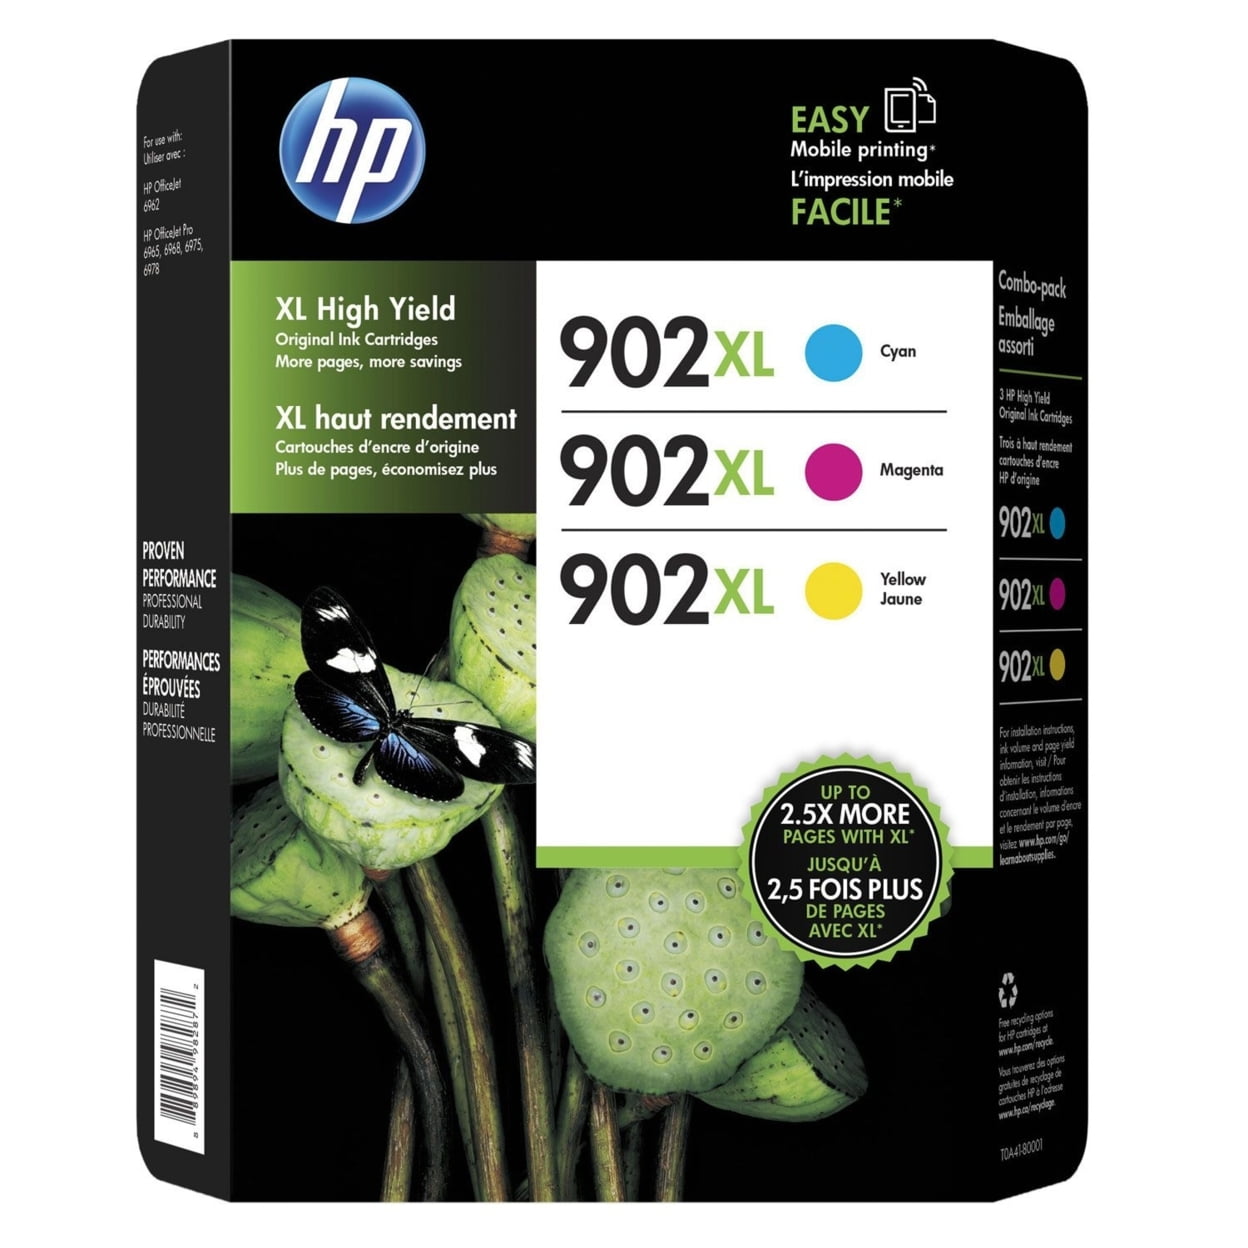 HP 903 XL Ink Cartridge Combo Pack 10 pcs - Compatible - BK/C/M/Y 158 ml